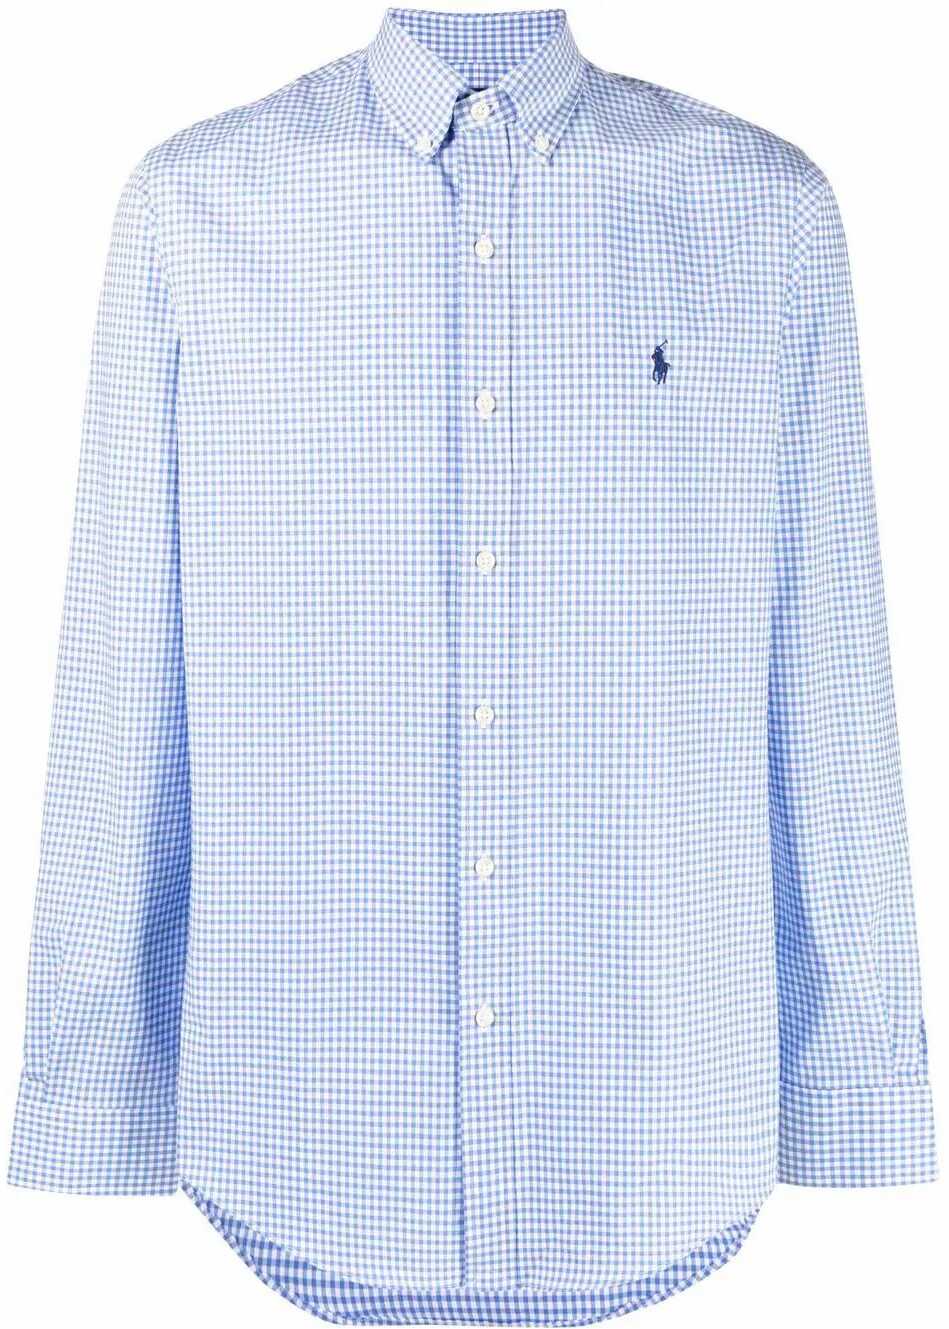 Ralph Lauren Cotton Shirt LIGHT BLUE